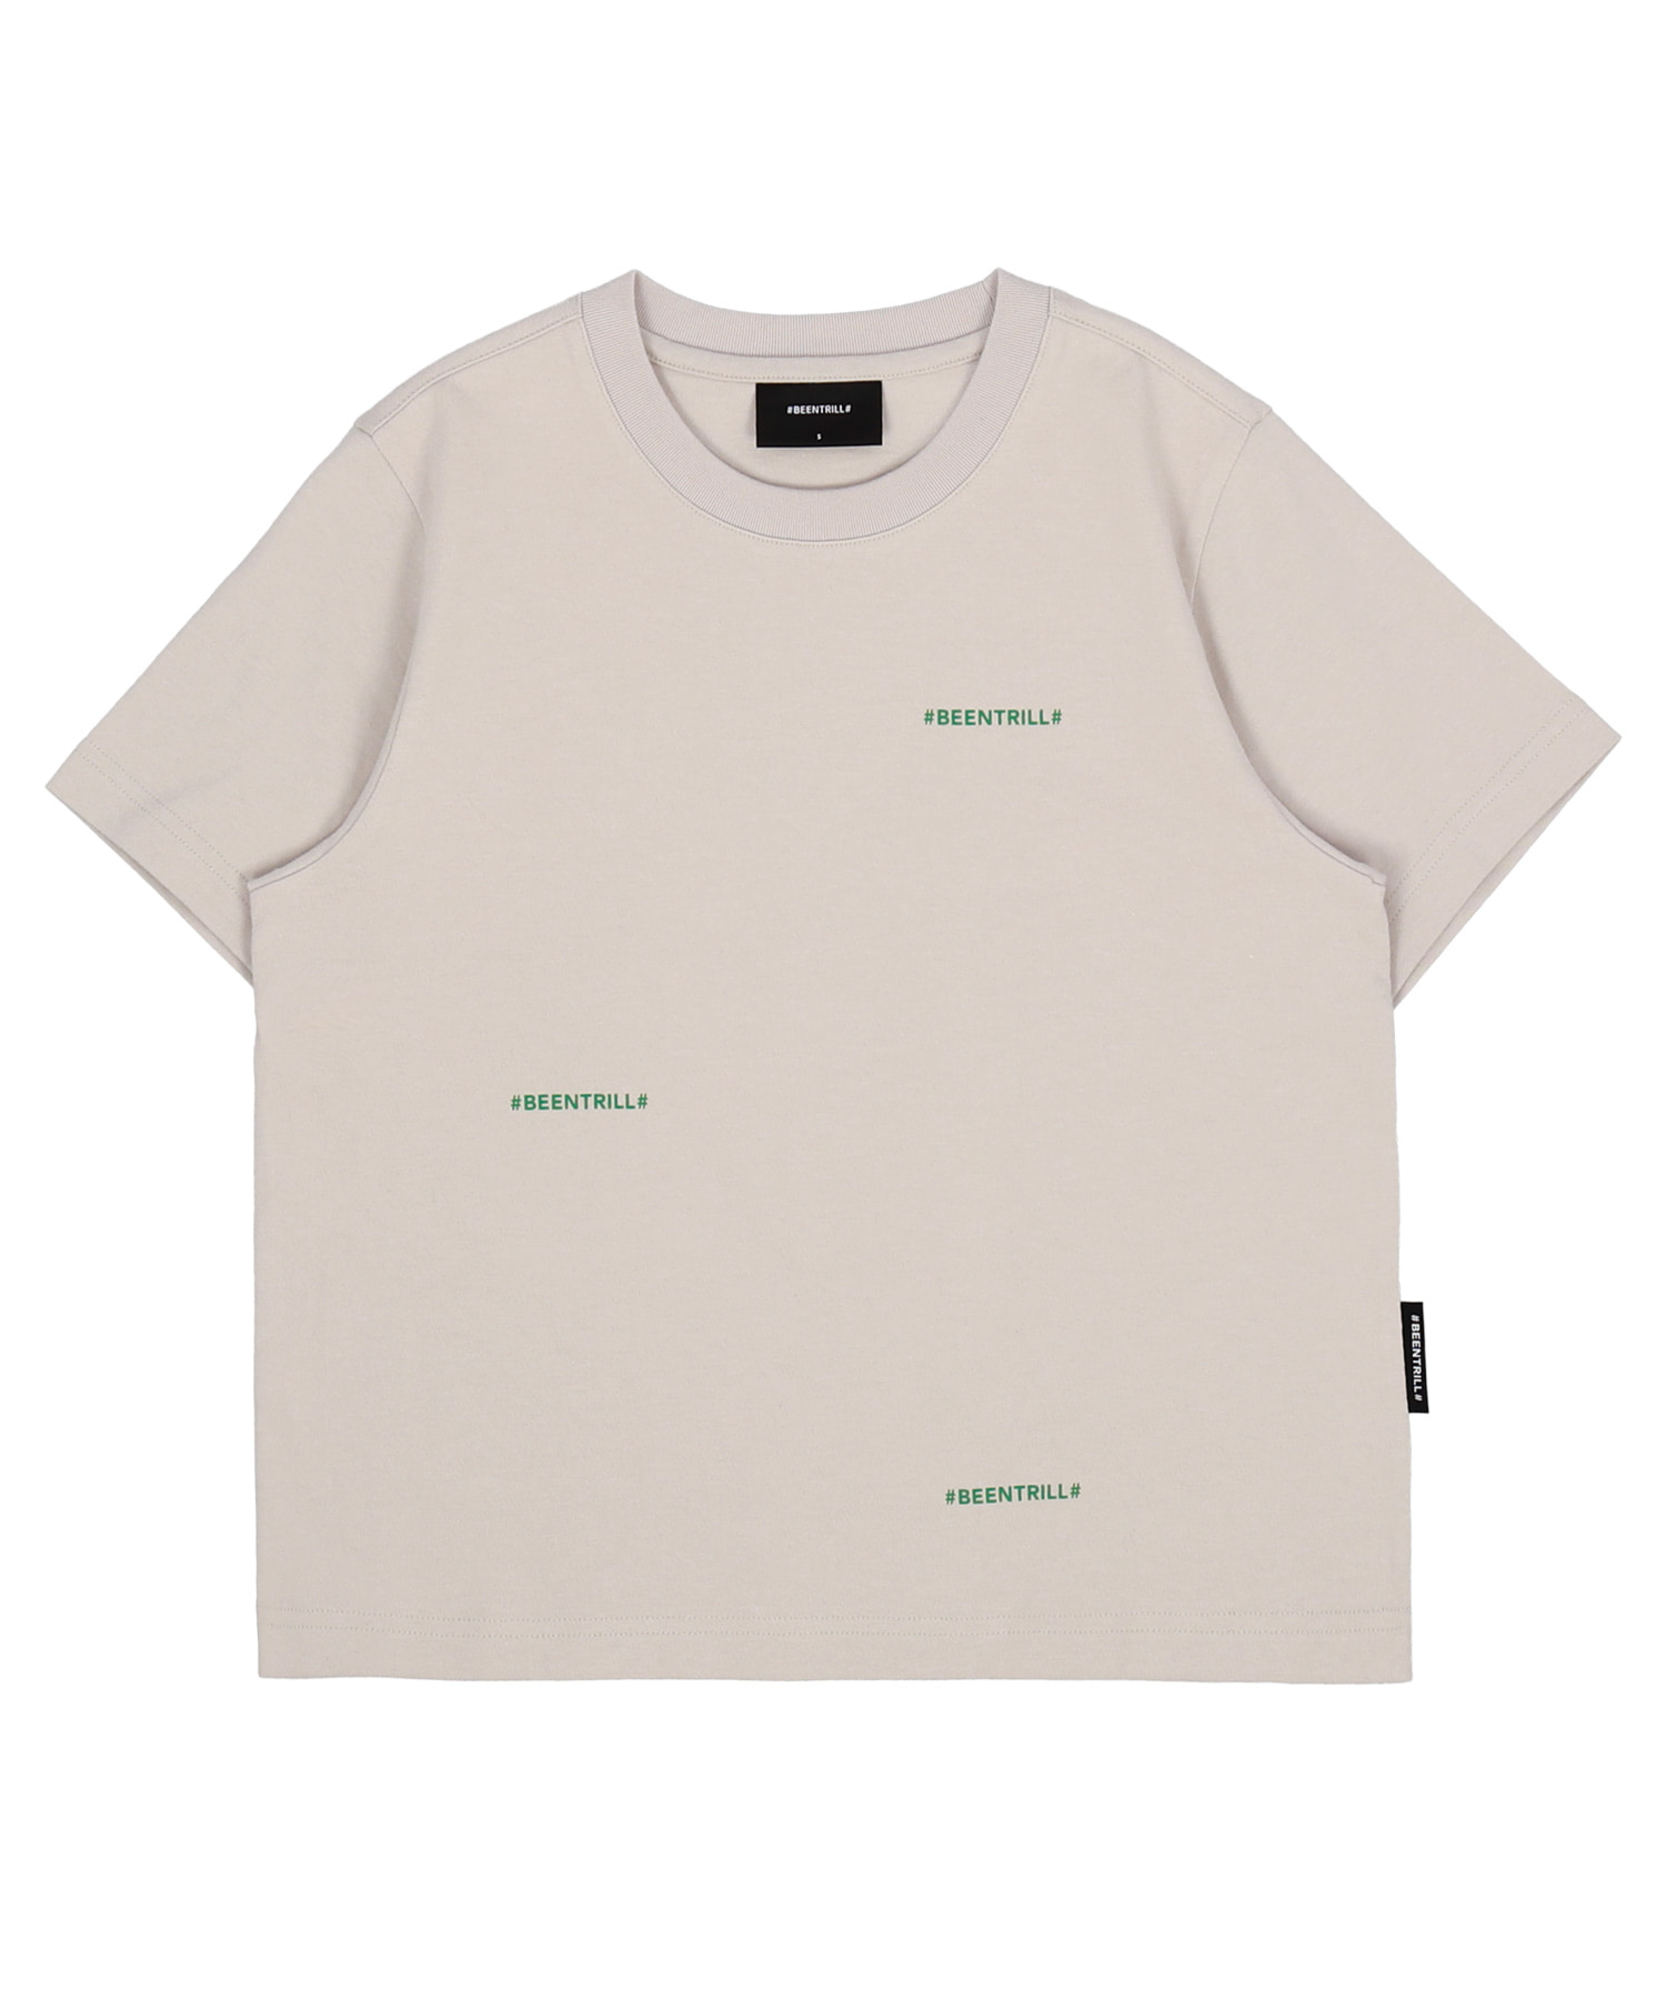 우먼즈 라임 모노그램 반팔 티셔츠(라이트 베이지)